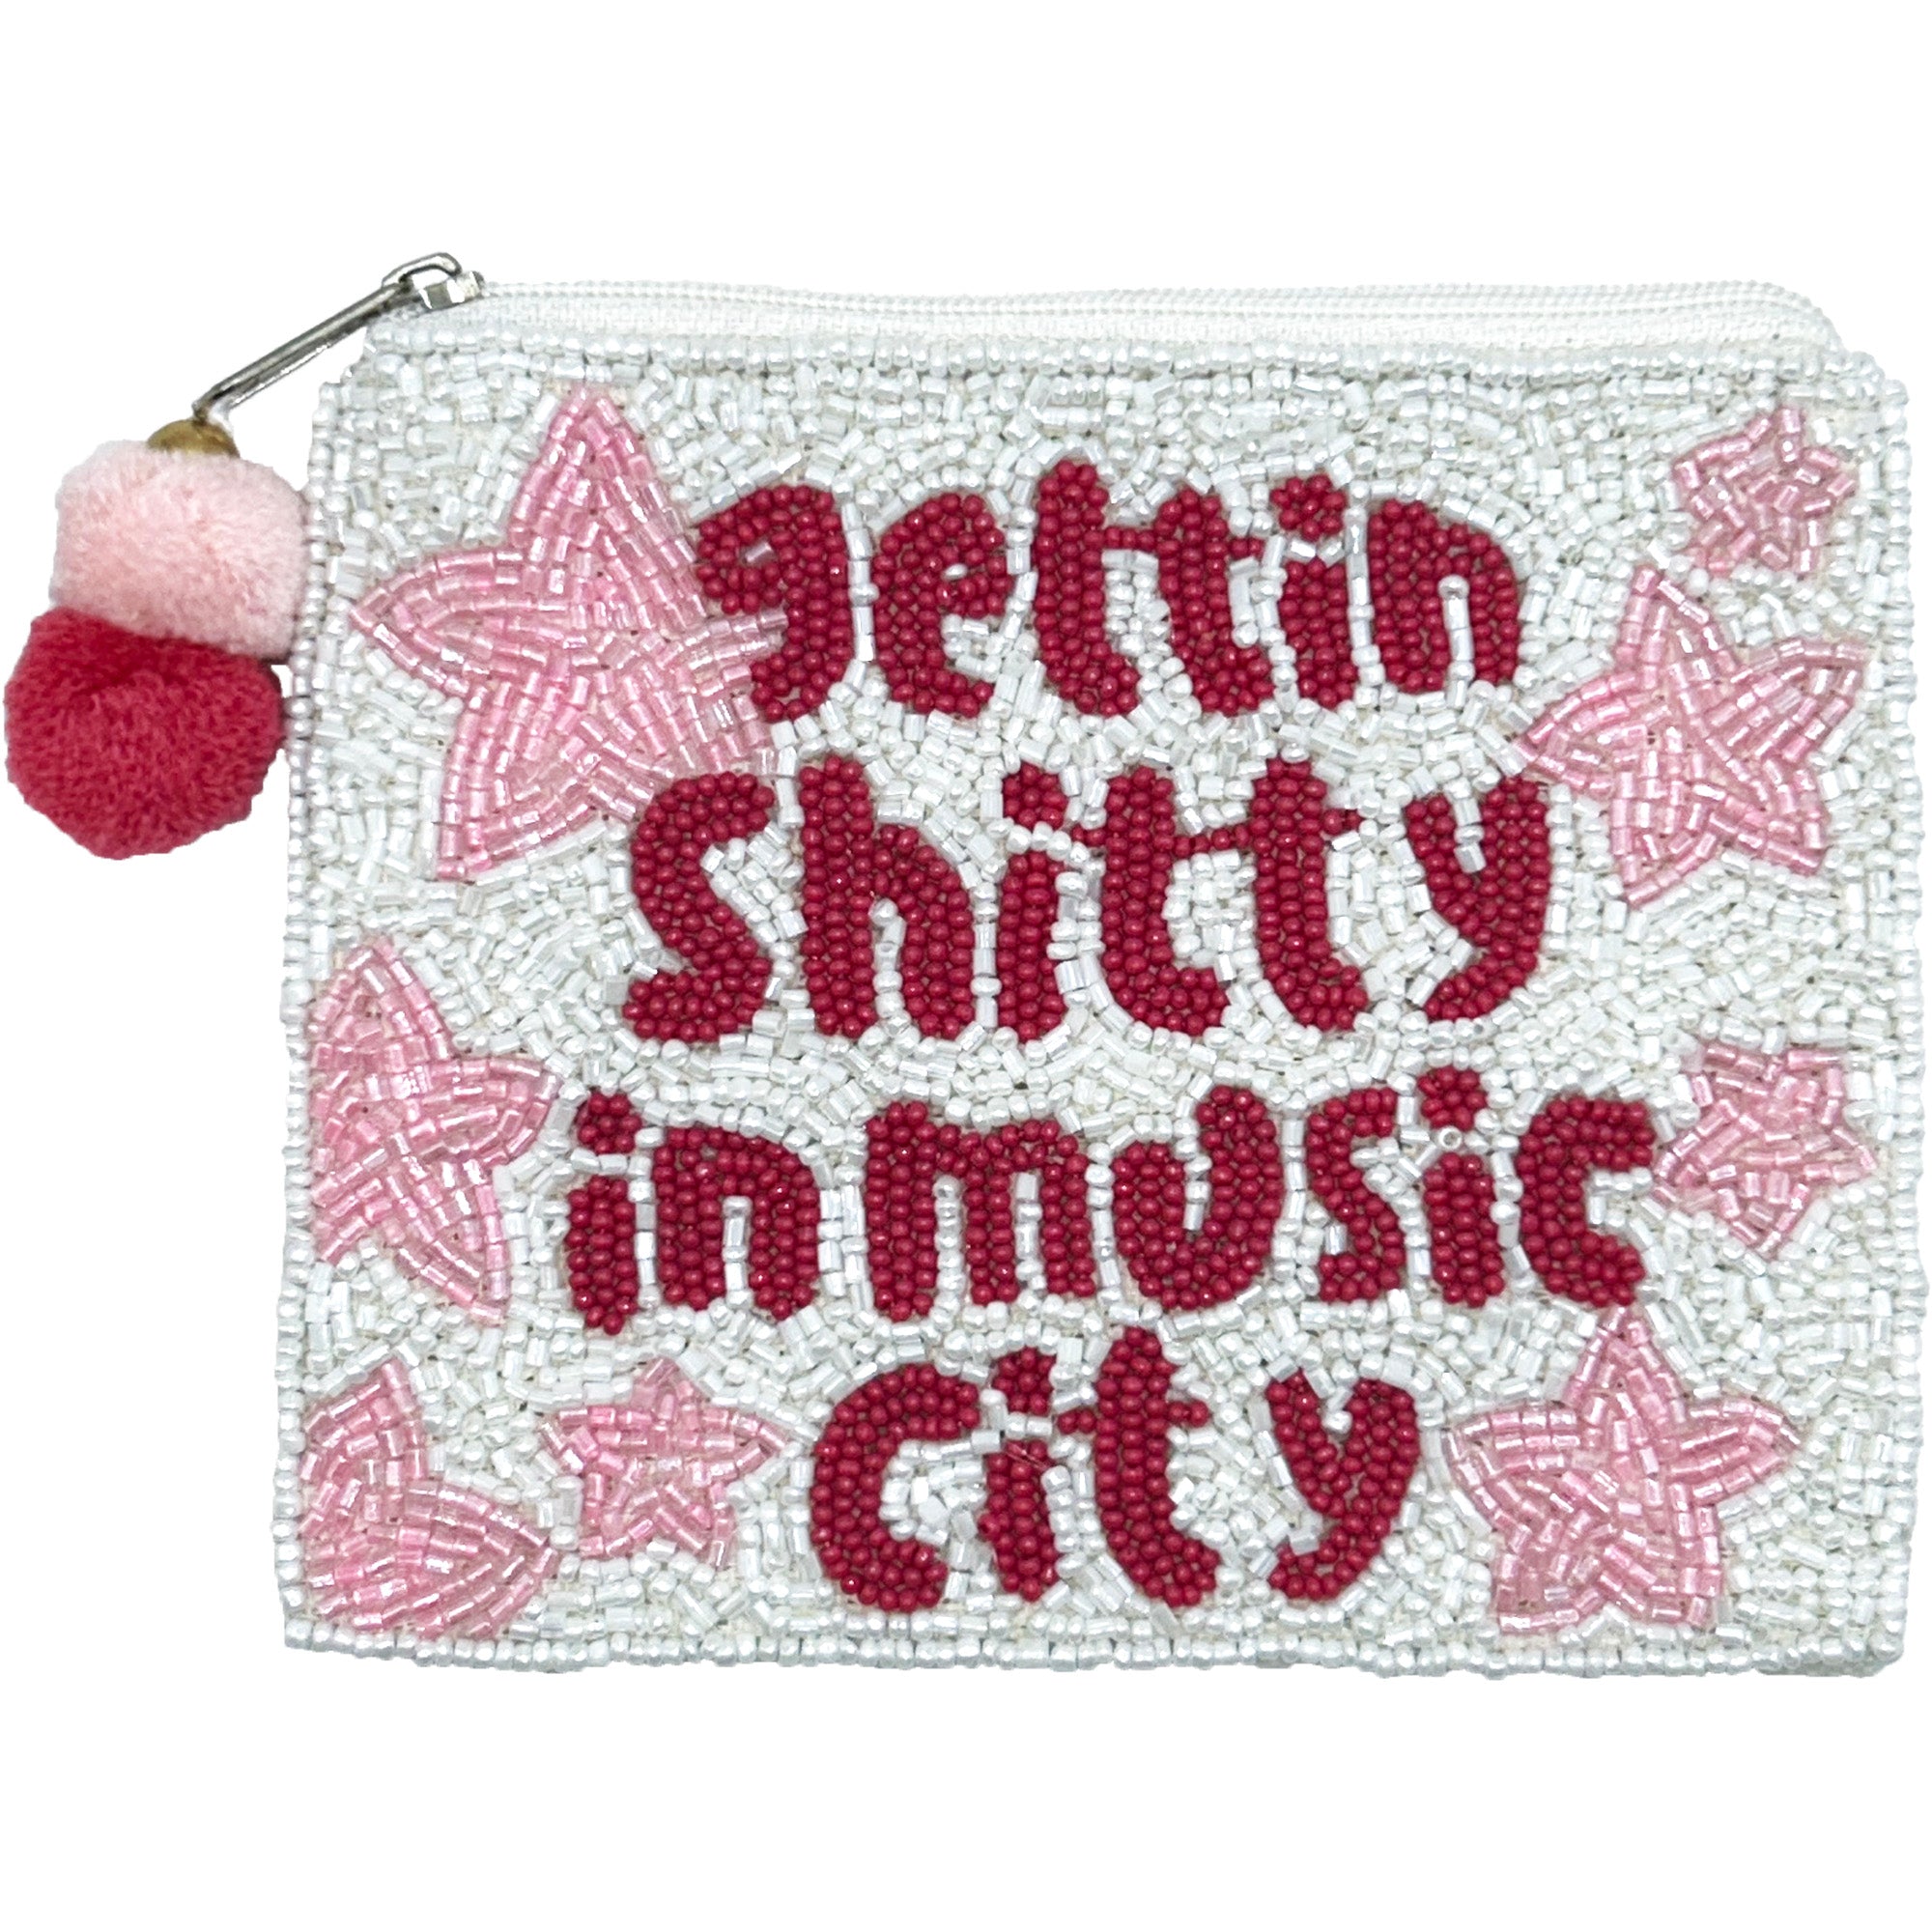 LA CHIC GETTIN SHITTY IN MUSIC CITY